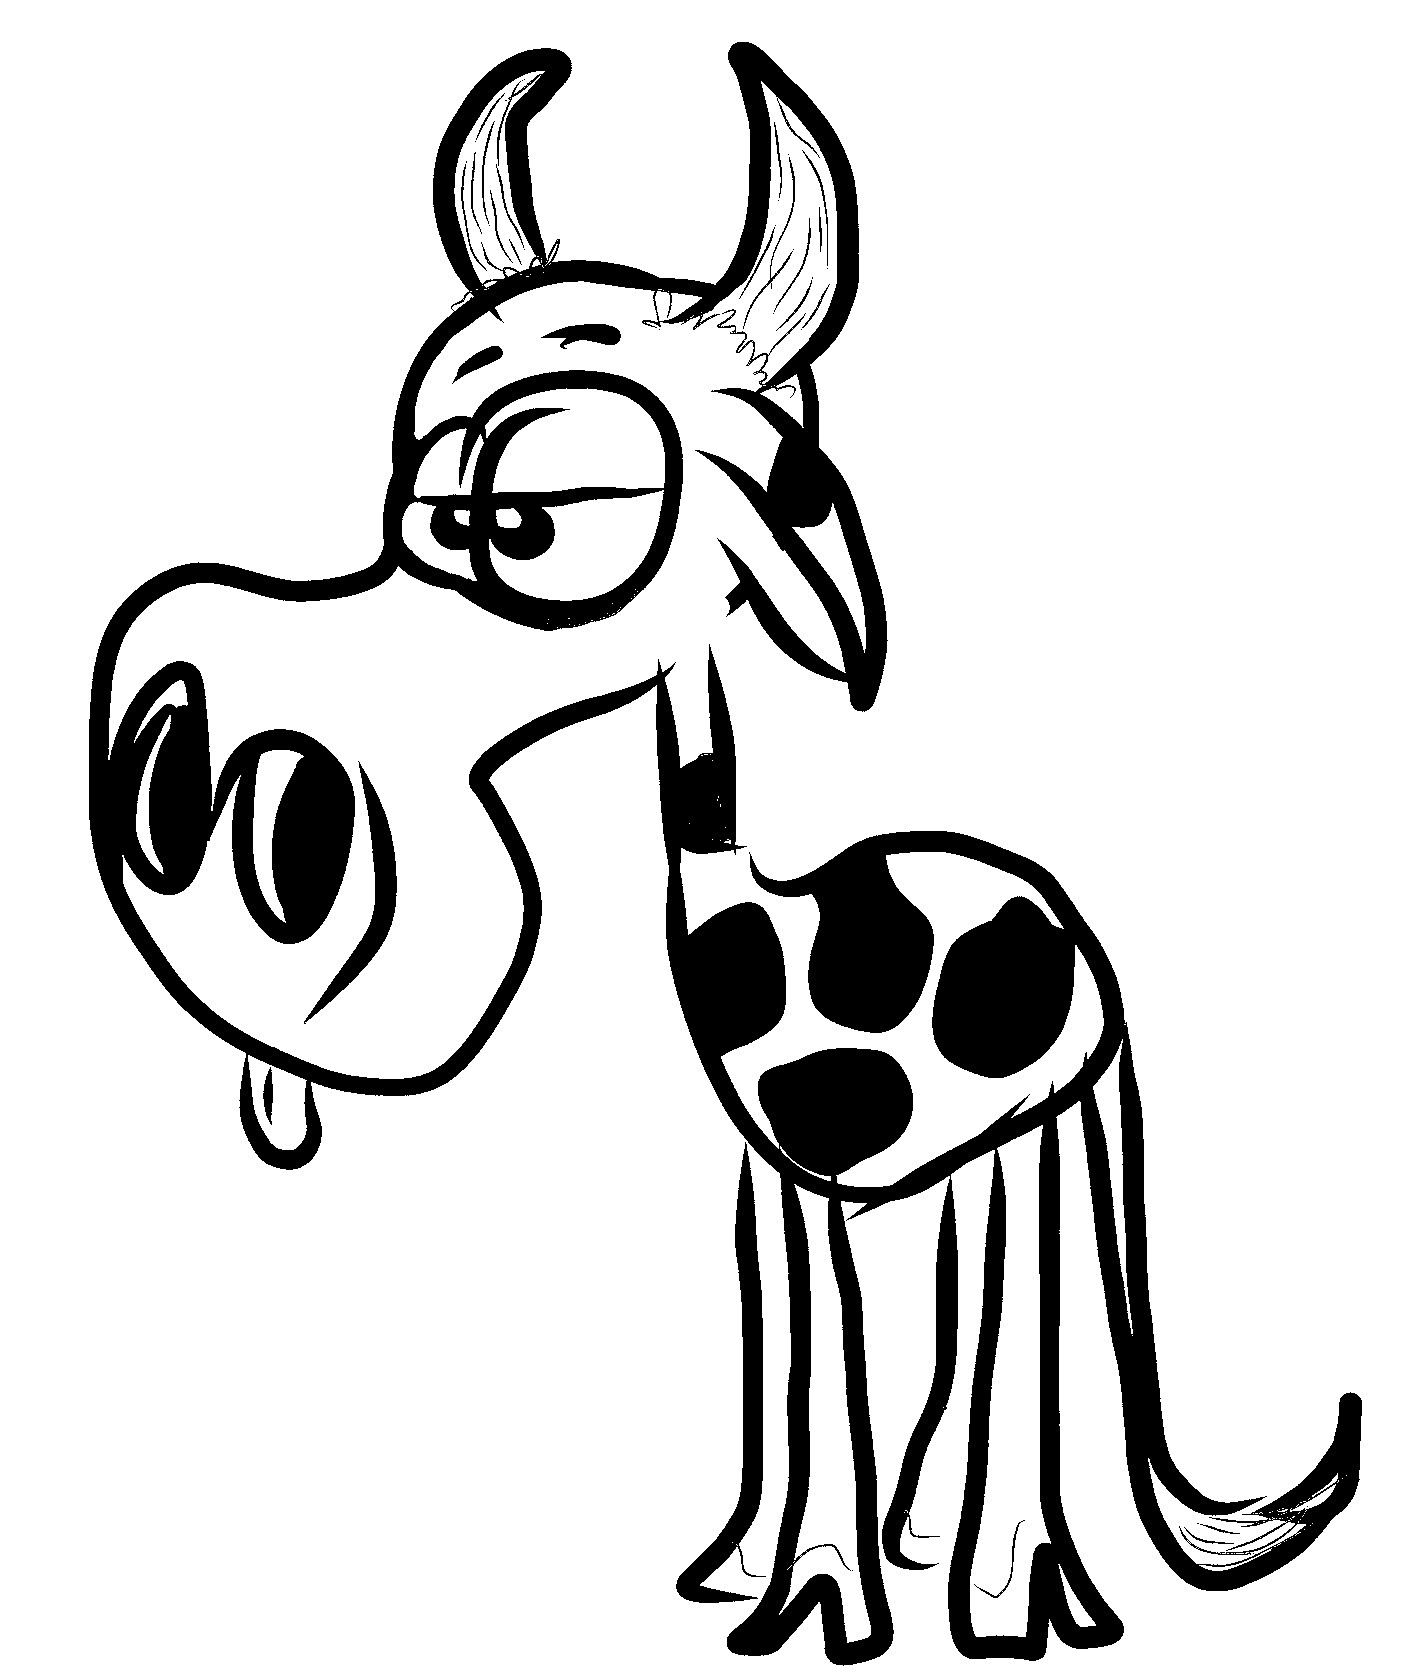 Giraffe-achtige humoristische koe kleurplaat